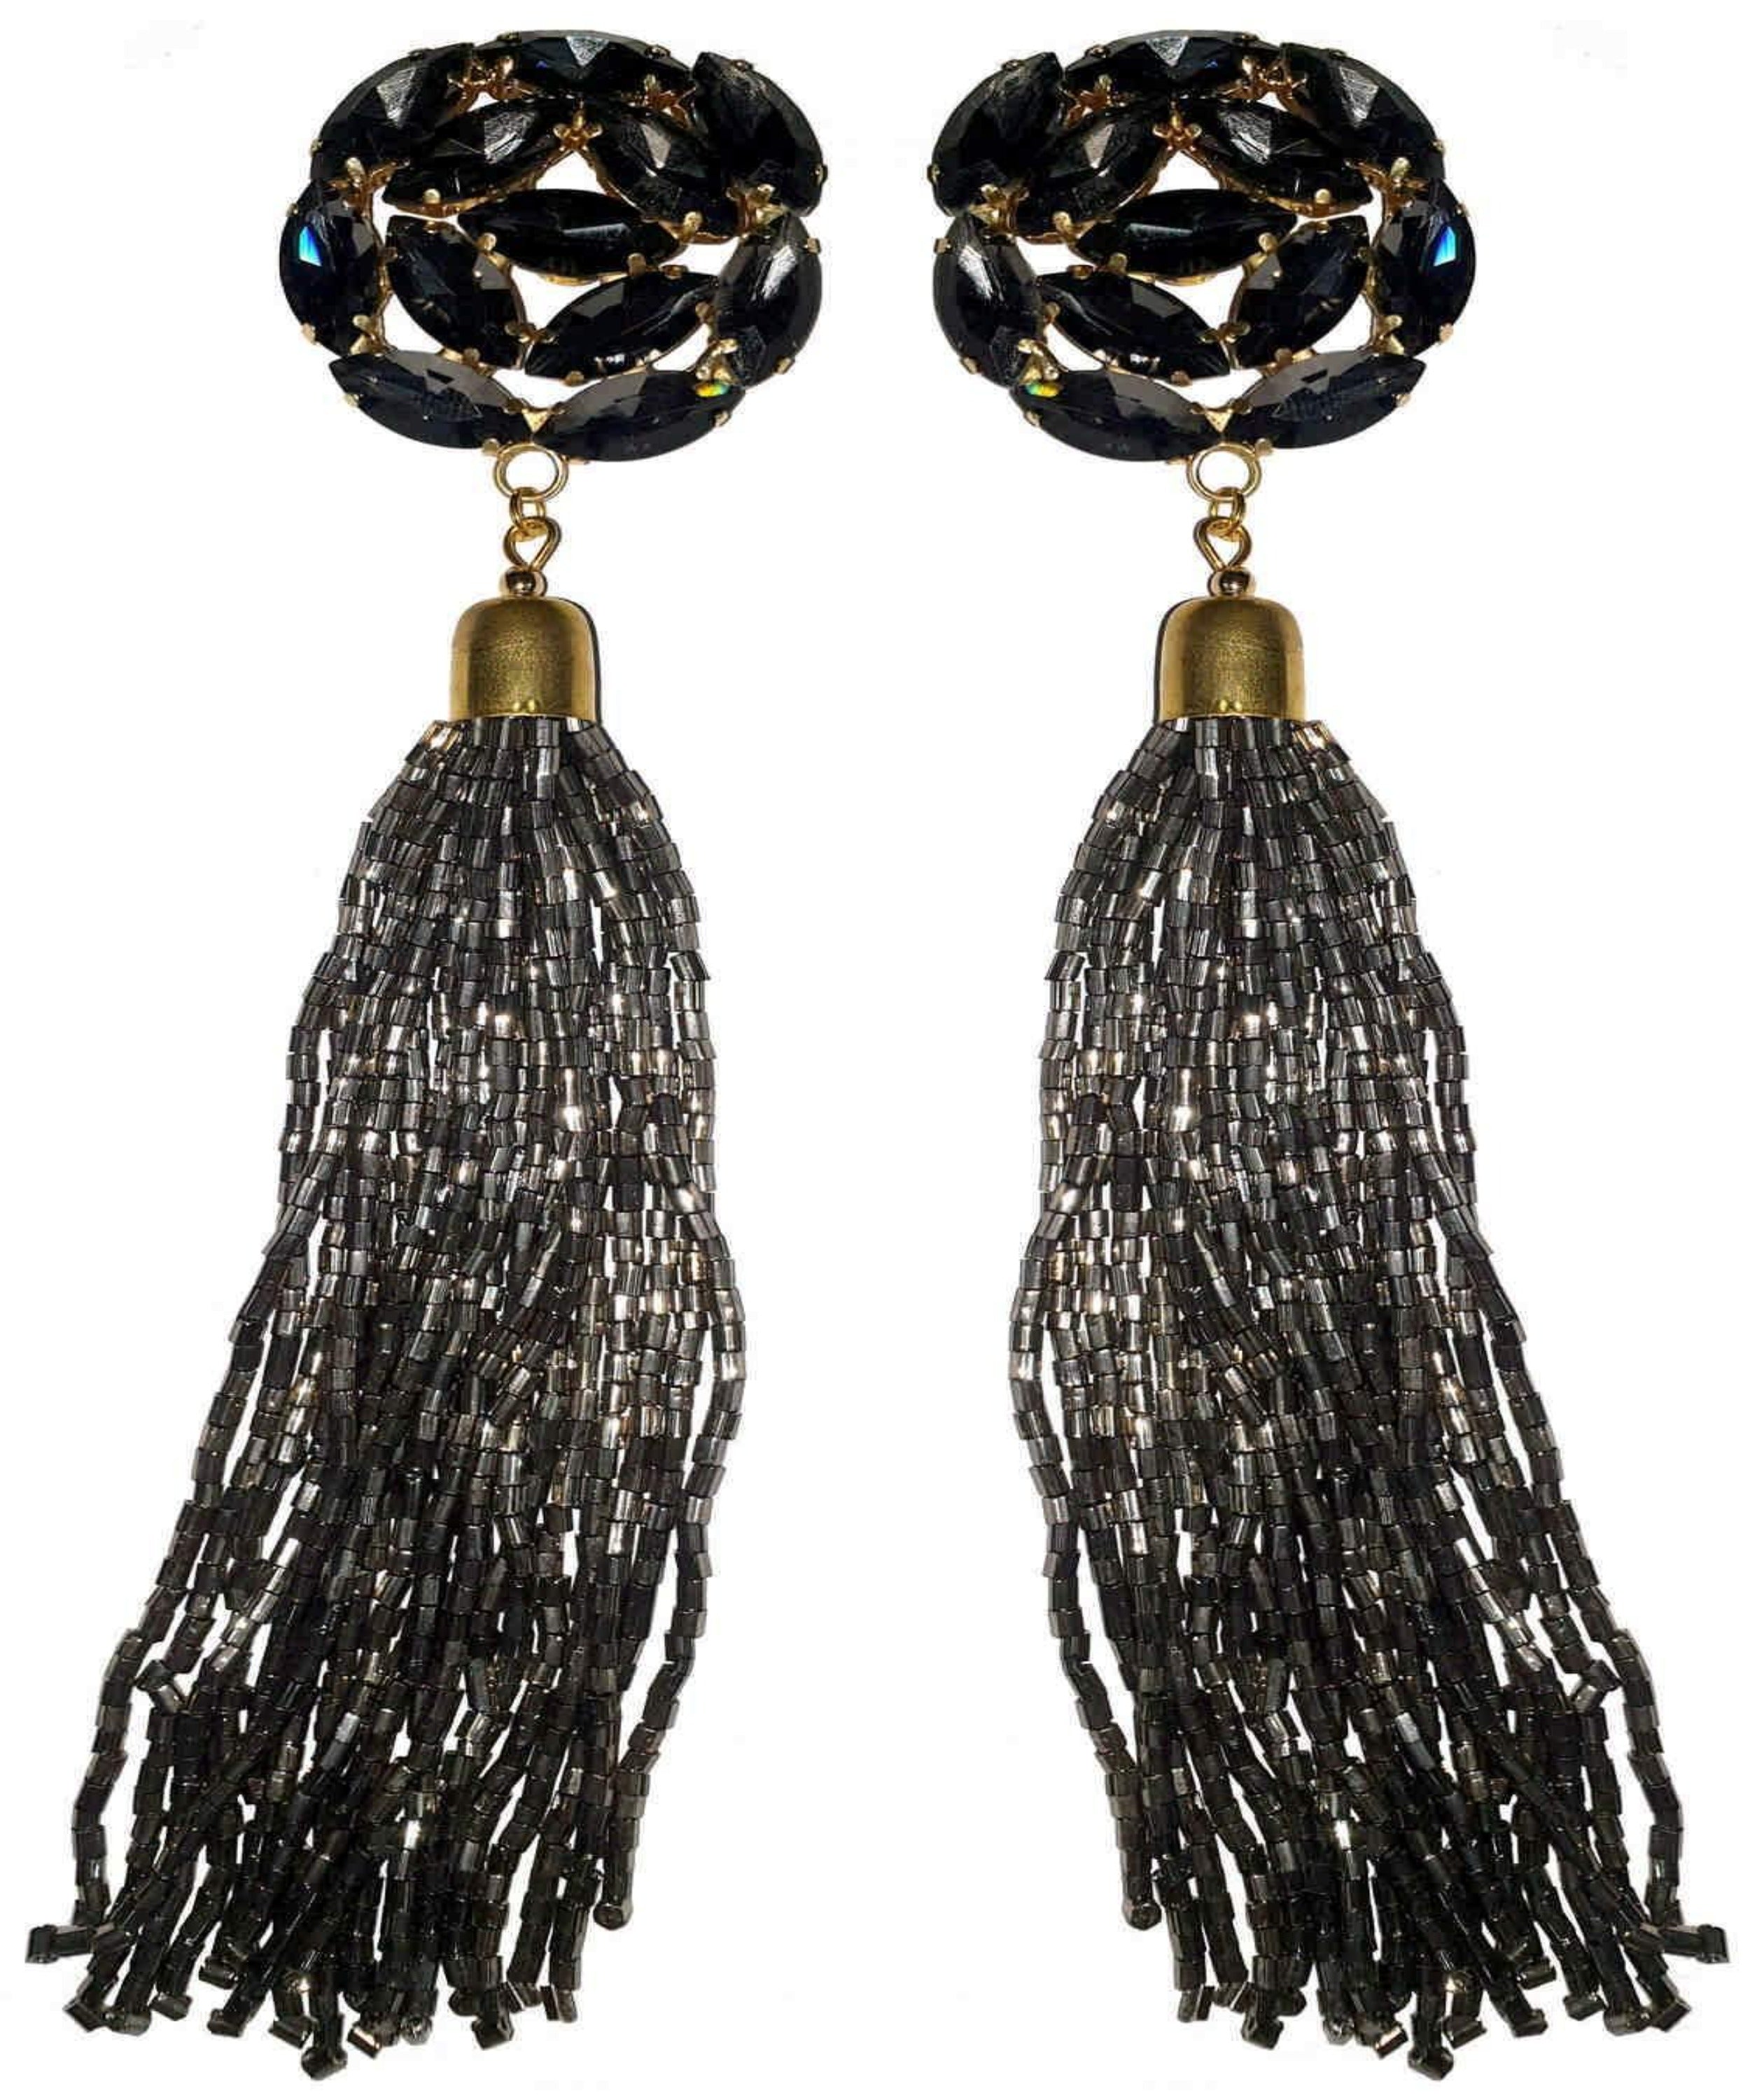 22k Gold Chandbali Earrings with Pearls | Jadau Earrings | Rudradhan